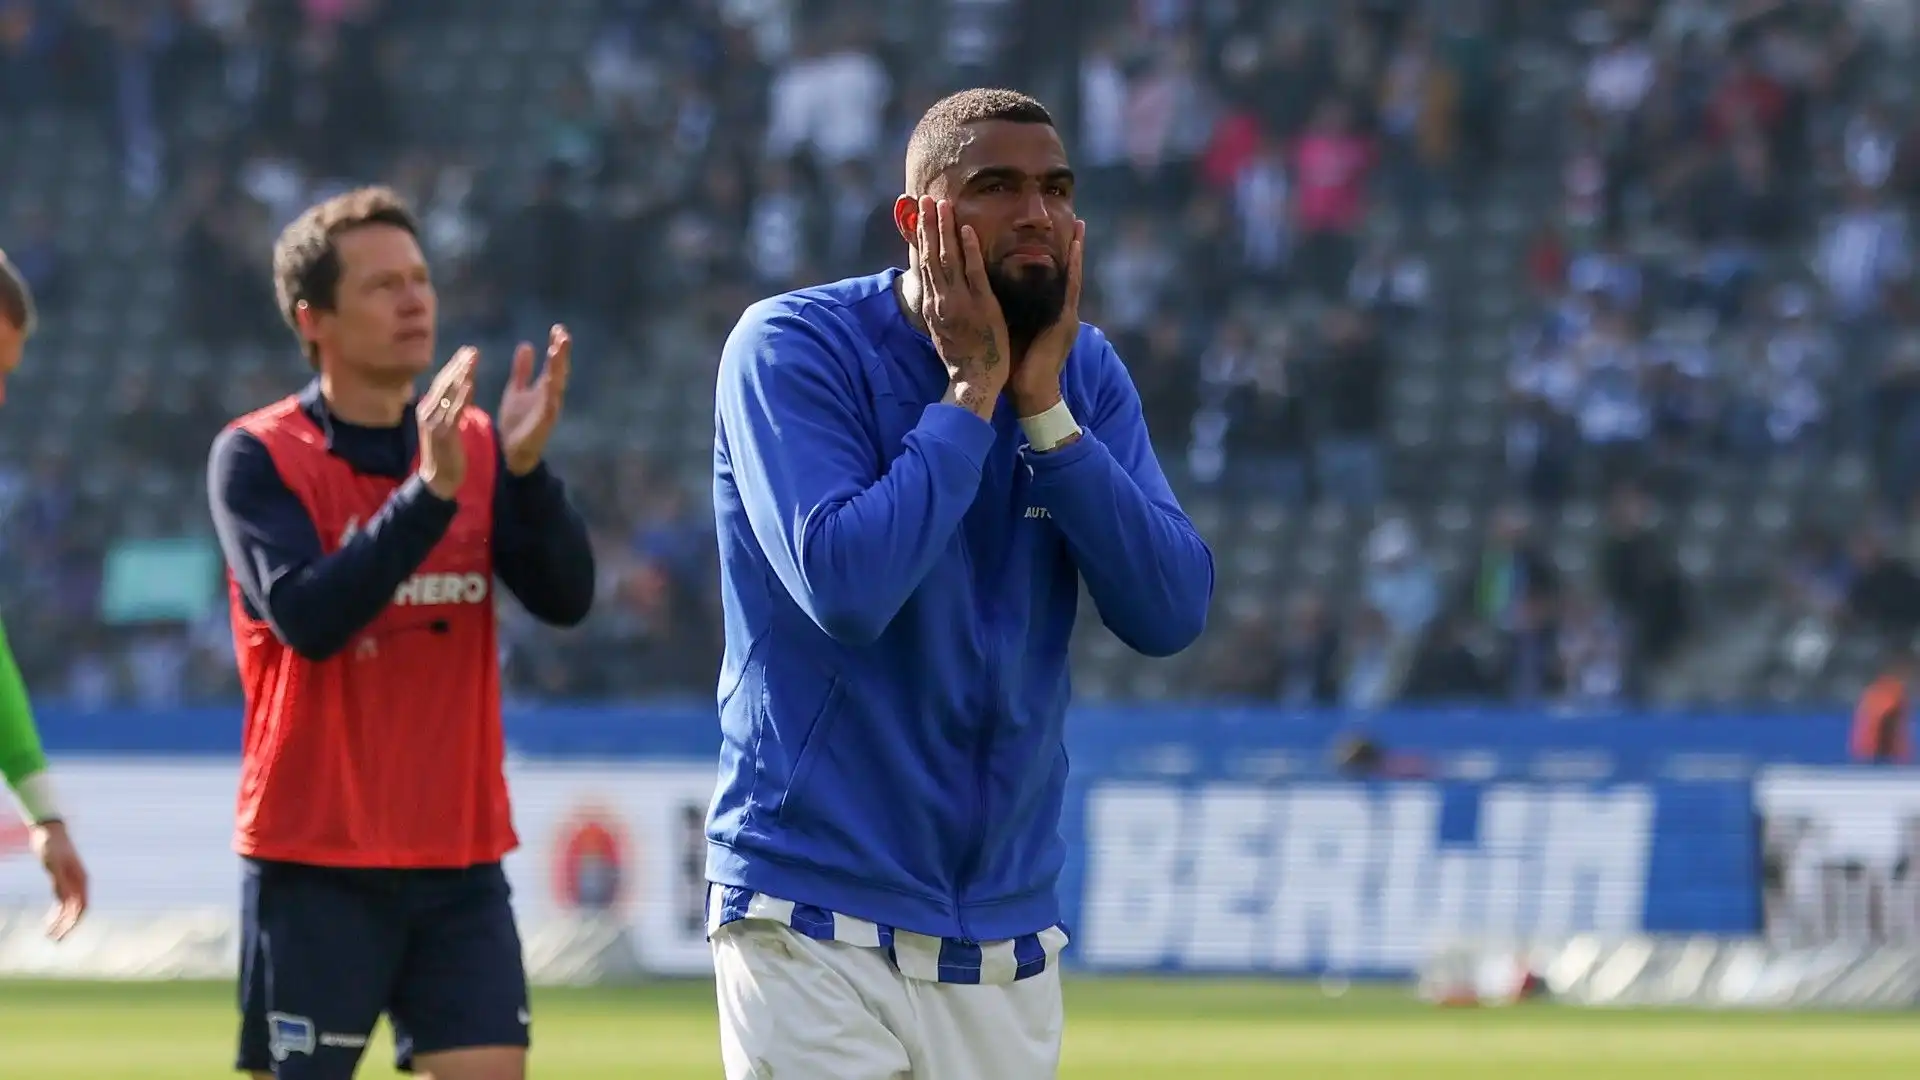 L'1-1 contro il Bochum condanna la squadra alla retrocessione